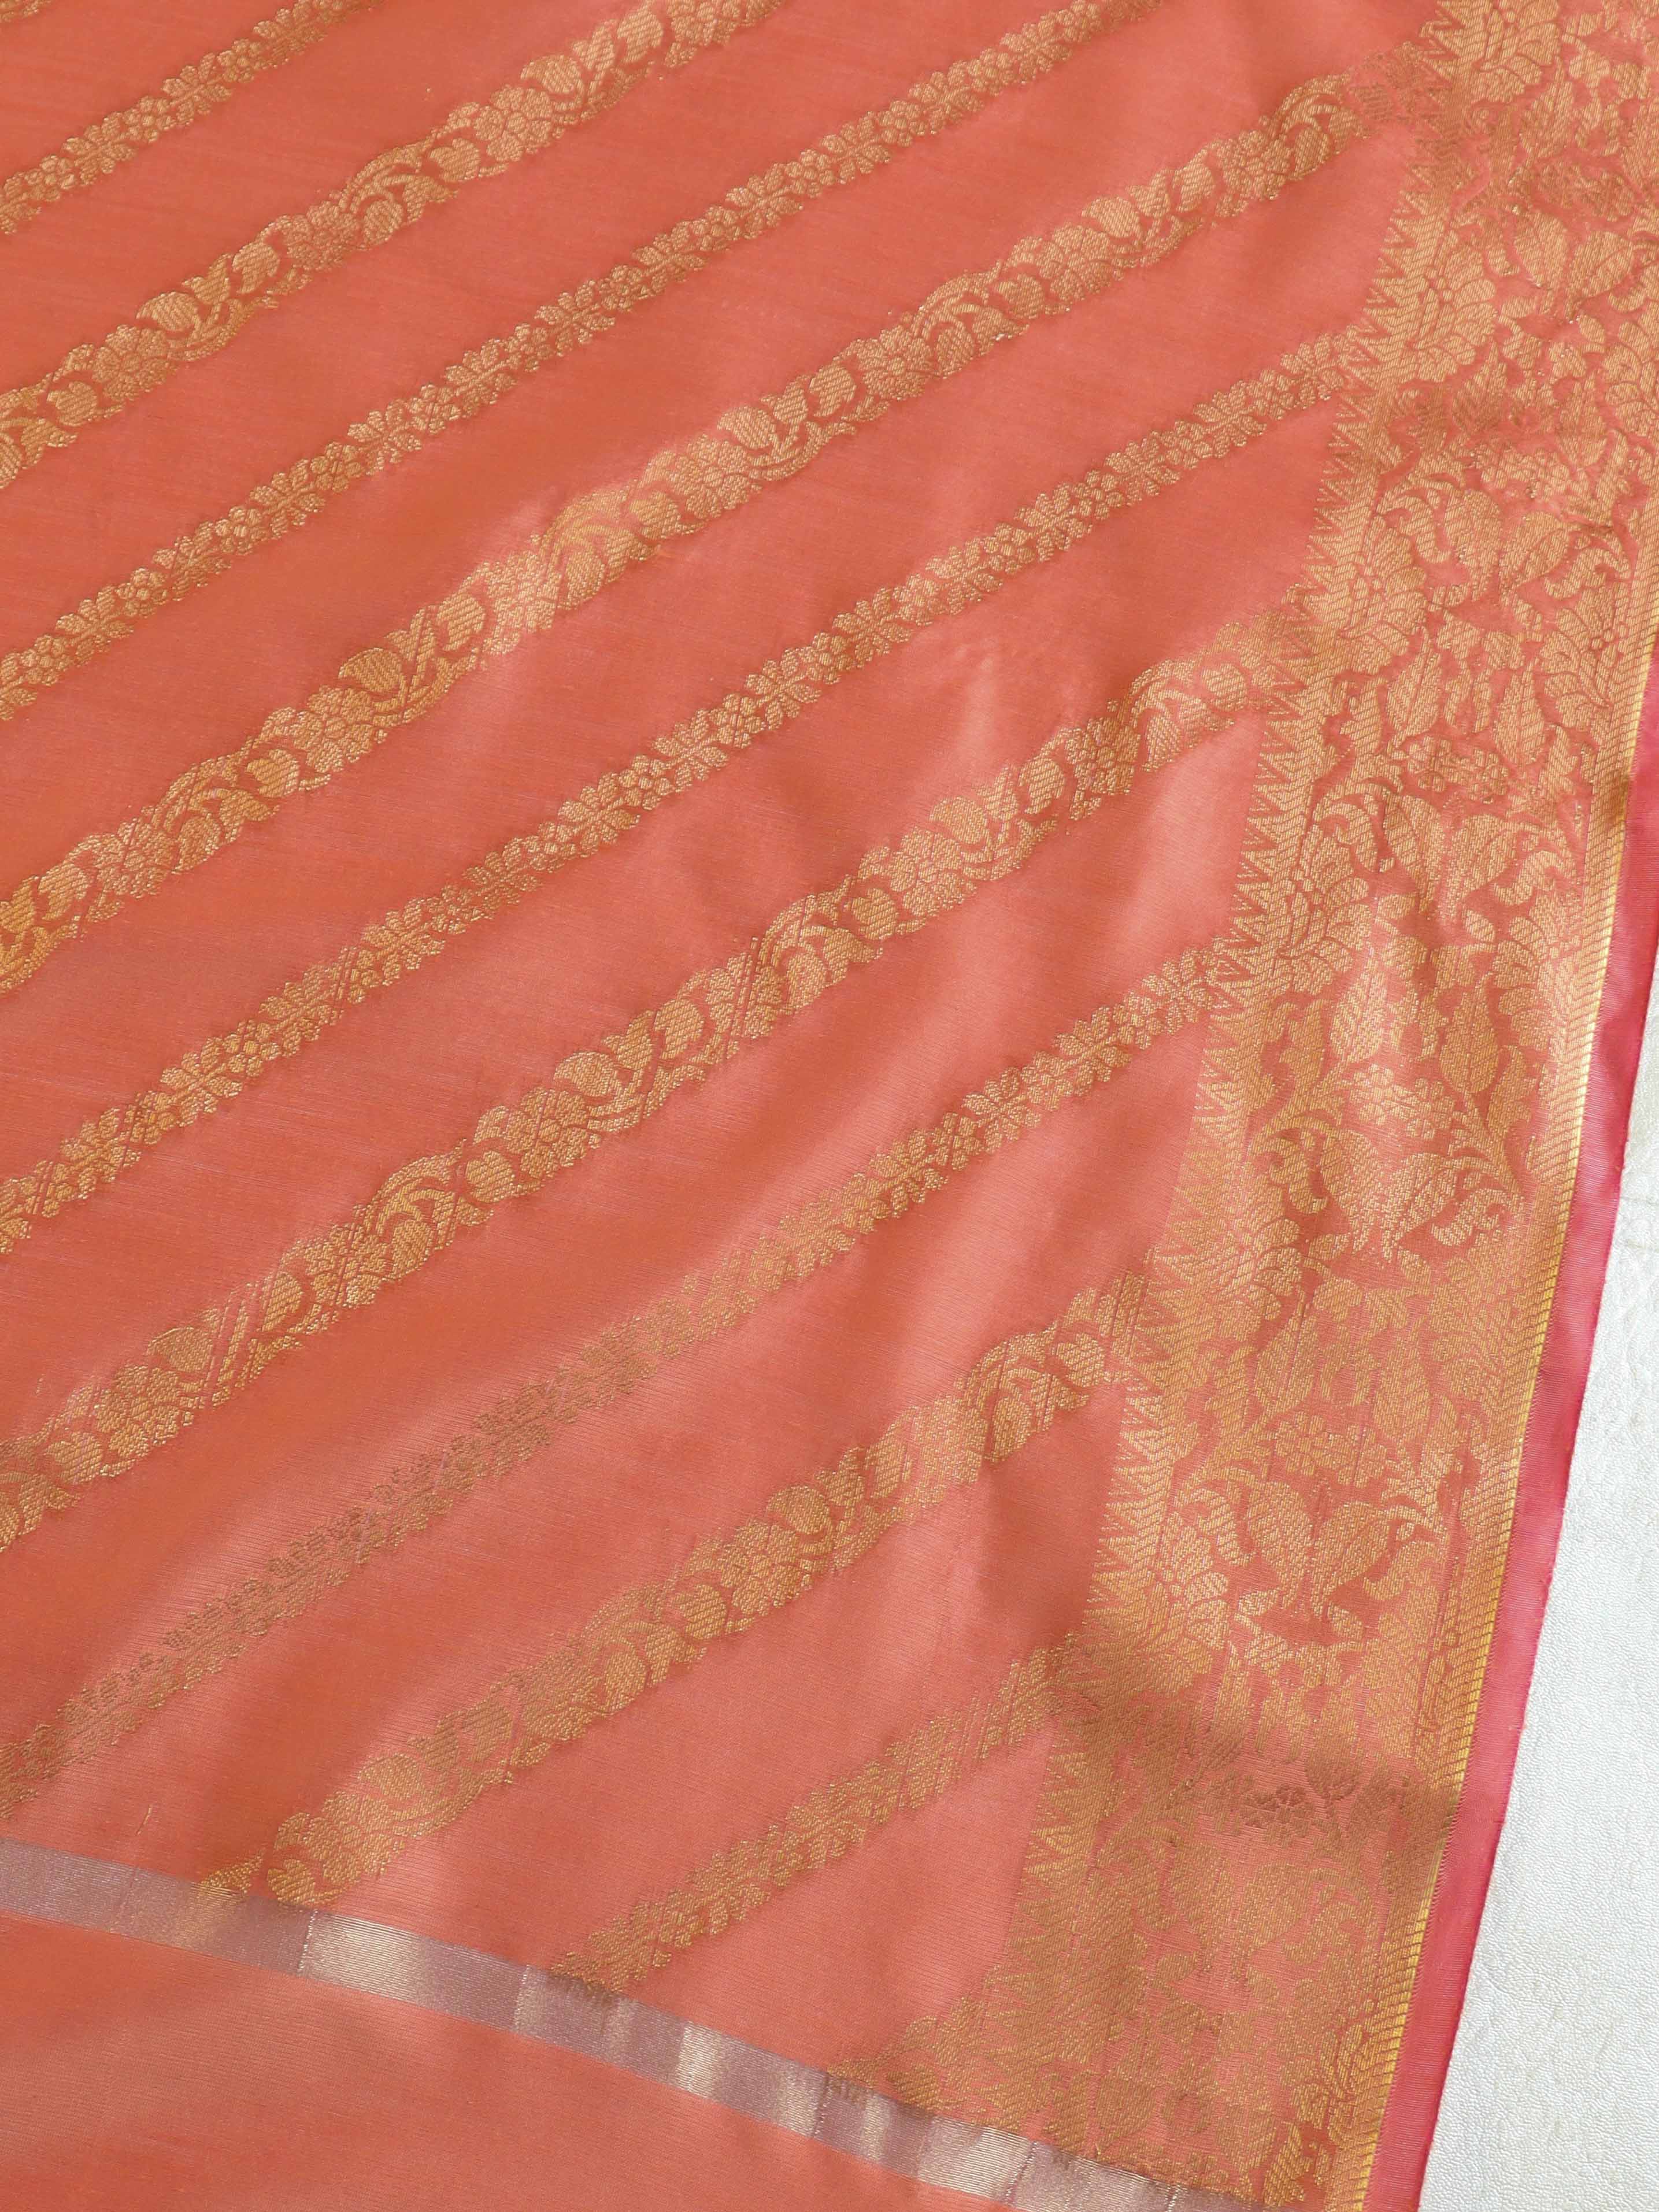 Banarasee Cotton Silk Salwar Kameez Fabric & Dupatta-Peach